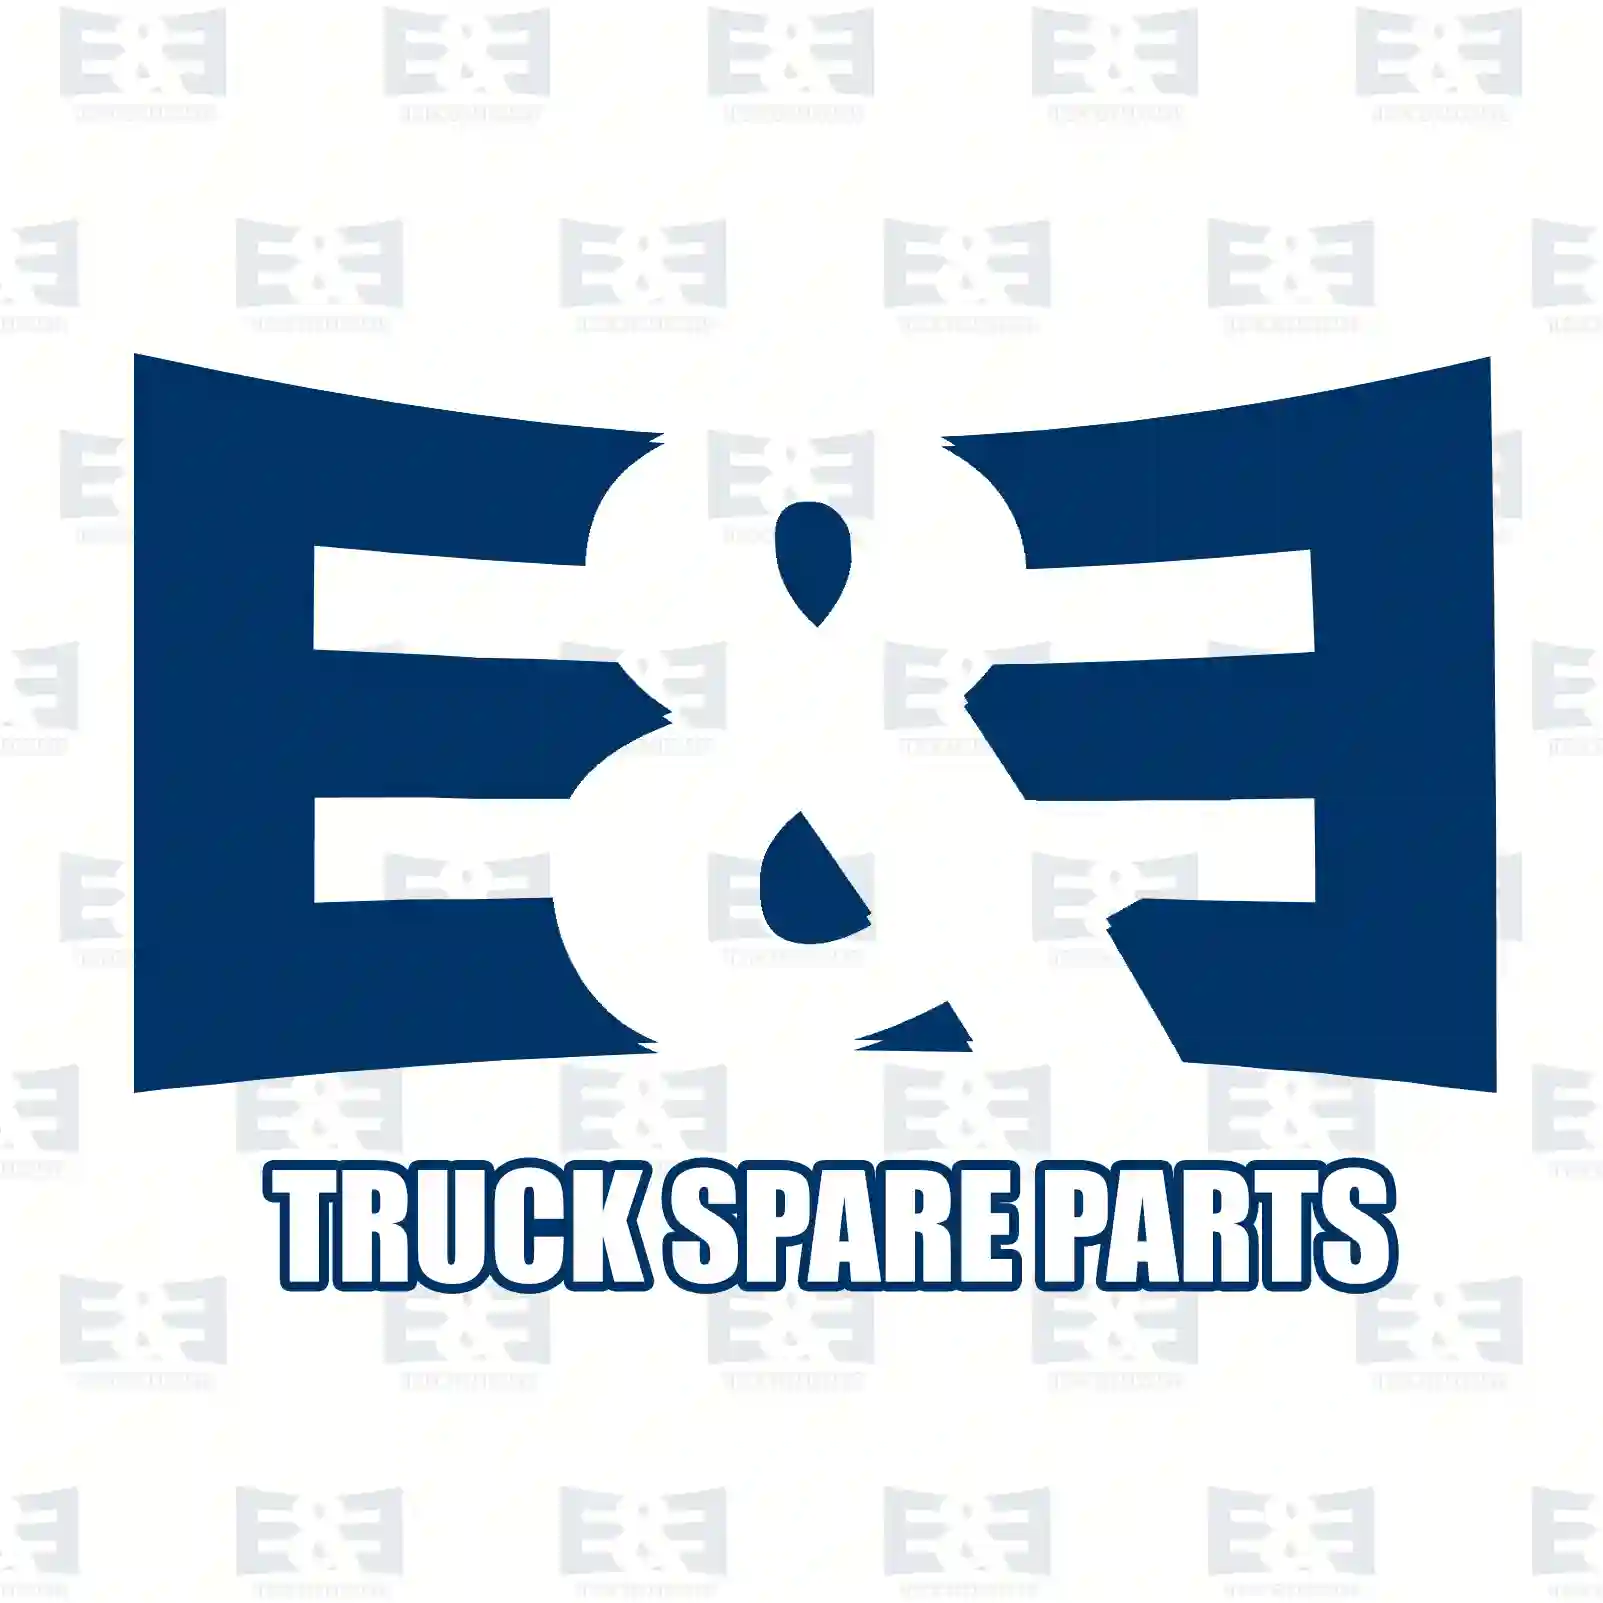 Guide sleeve, 2E2278784, 1668212 ||  2E2278784 E&E Truck Spare Parts | Truck Spare Parts, Auotomotive Spare Parts Guide sleeve, 2E2278784, 1668212 ||  2E2278784 E&E Truck Spare Parts | Truck Spare Parts, Auotomotive Spare Parts